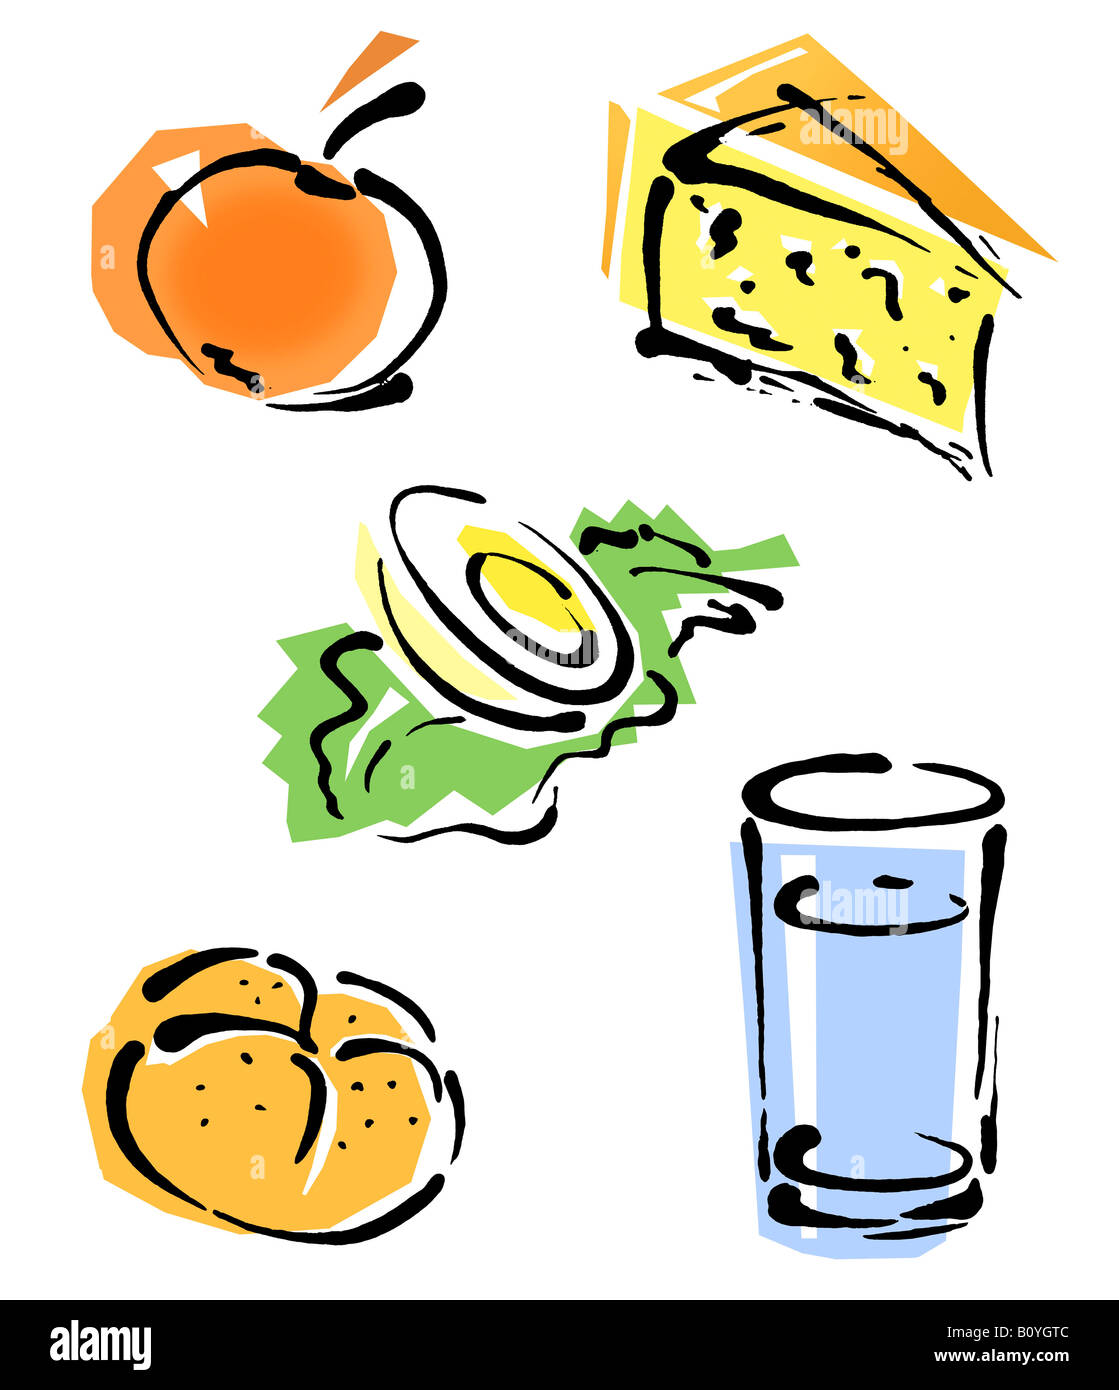 Basic foods, illustration Stock Photo